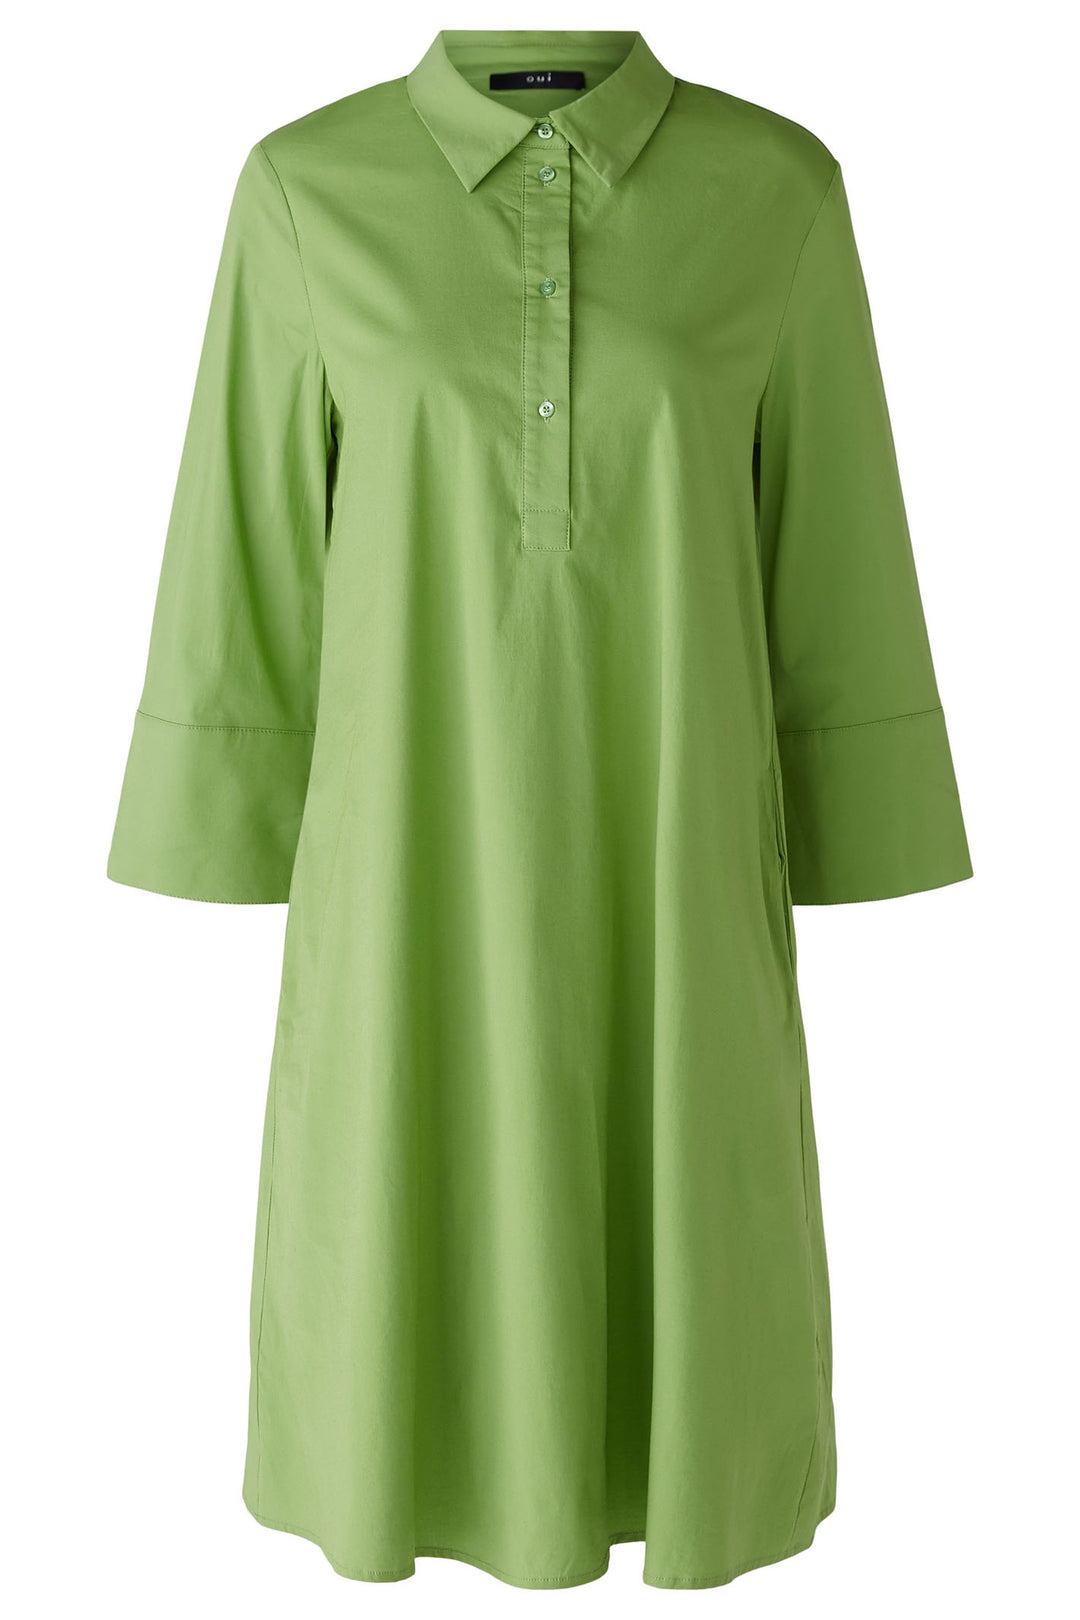 Oui 88465 Forest Green Wide Sleeve Shirt Dress - Olivia Grace Fashion